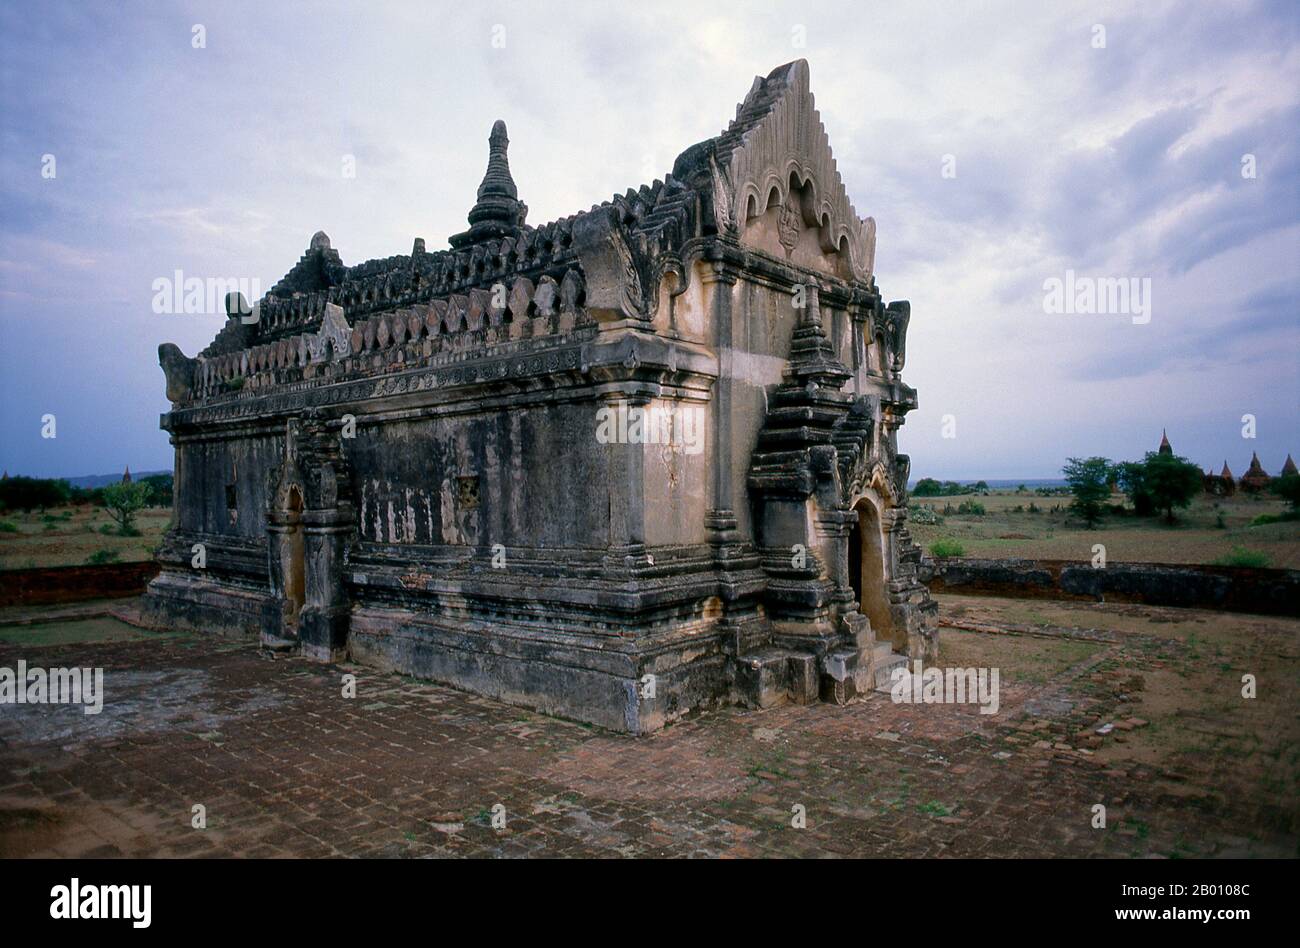 Birmania: Upali Thein, Bagan (pagan) Ciudad Antigua. Upali Thein es una sala de ordenación budista situada entre Bagan y Nyaung U en Myanmar. Construido durante el reinado del rey Anawrahta (1014-1077), sus frescos interiores bien conservados fueron hechos en 1794-1795 durante la dinastía Konbaung. Bagan, antes pagano, fue construido principalmente entre el siglo 11th y el siglo 13th. Formalmente titulado Arimaddanapura o Arimaddana (la ciudad del cruzado enemigo) y también conocido como Tambadipa (la tierra del cobre) o Tassadessa (la tierra parchada), era la capital de varios reinos antiguos en Birmania. Foto de stock